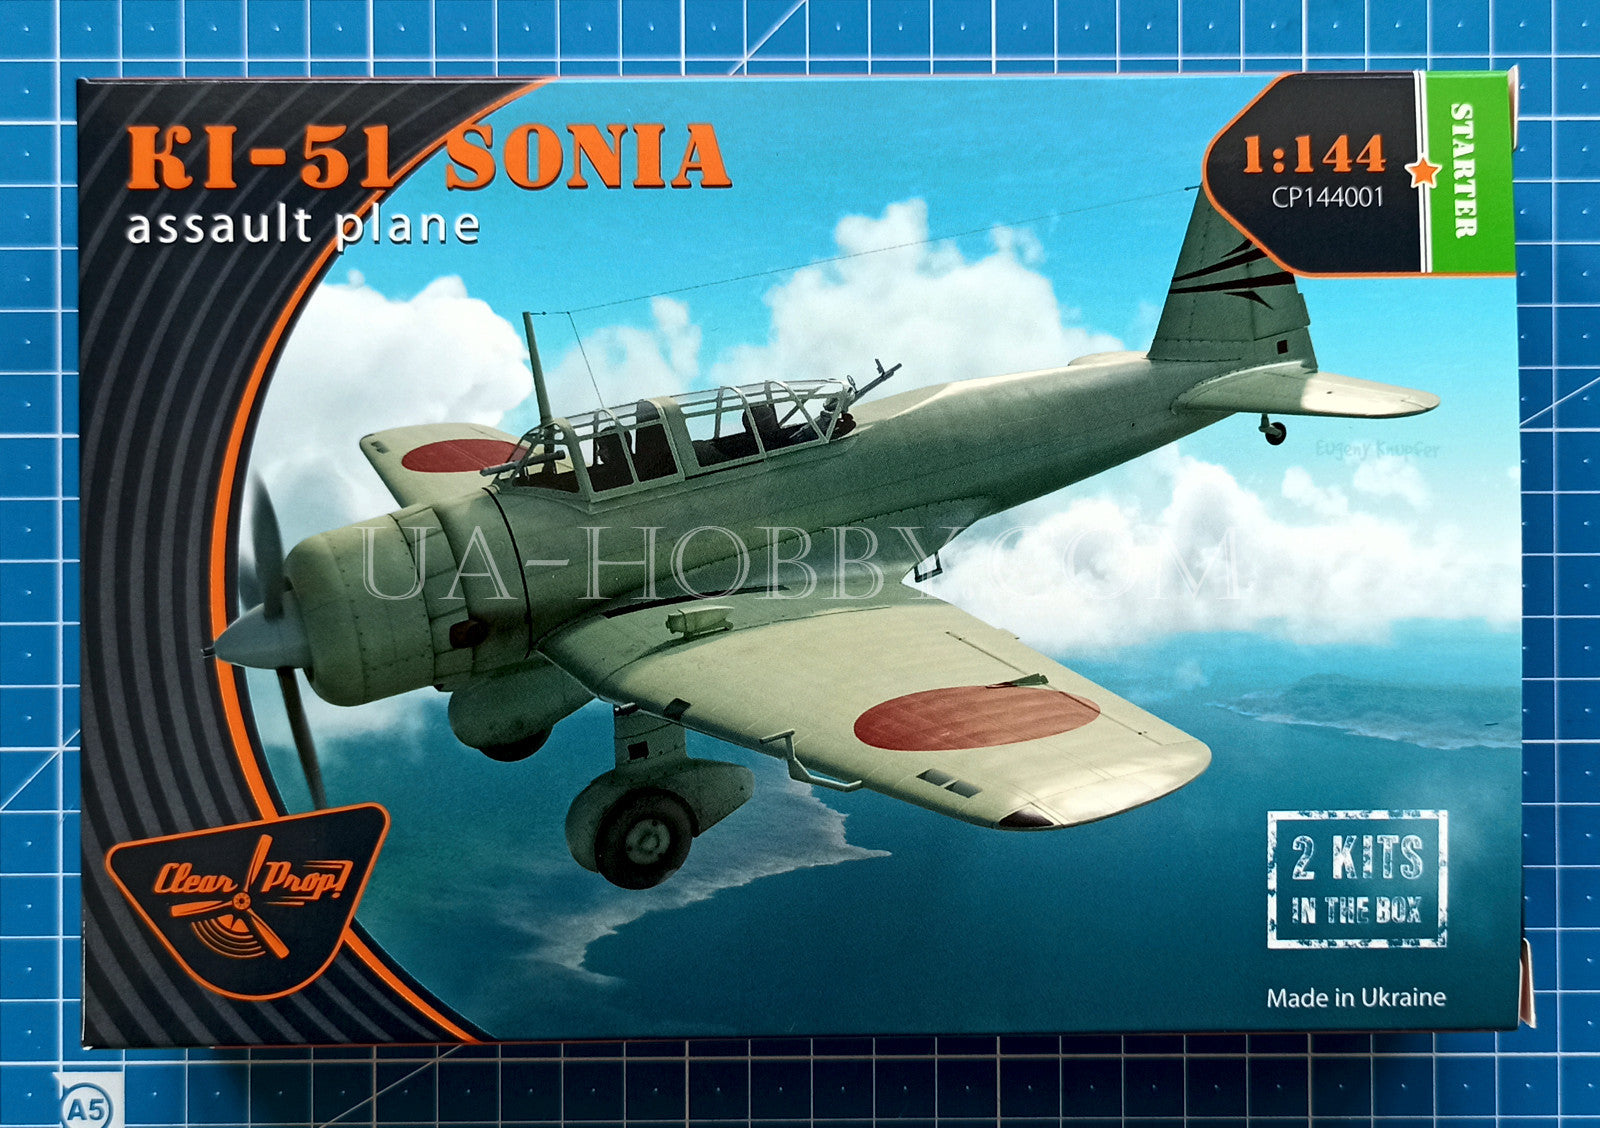 1/144 Ki-51 Sonia assault plane. Clear Prop! CP144001